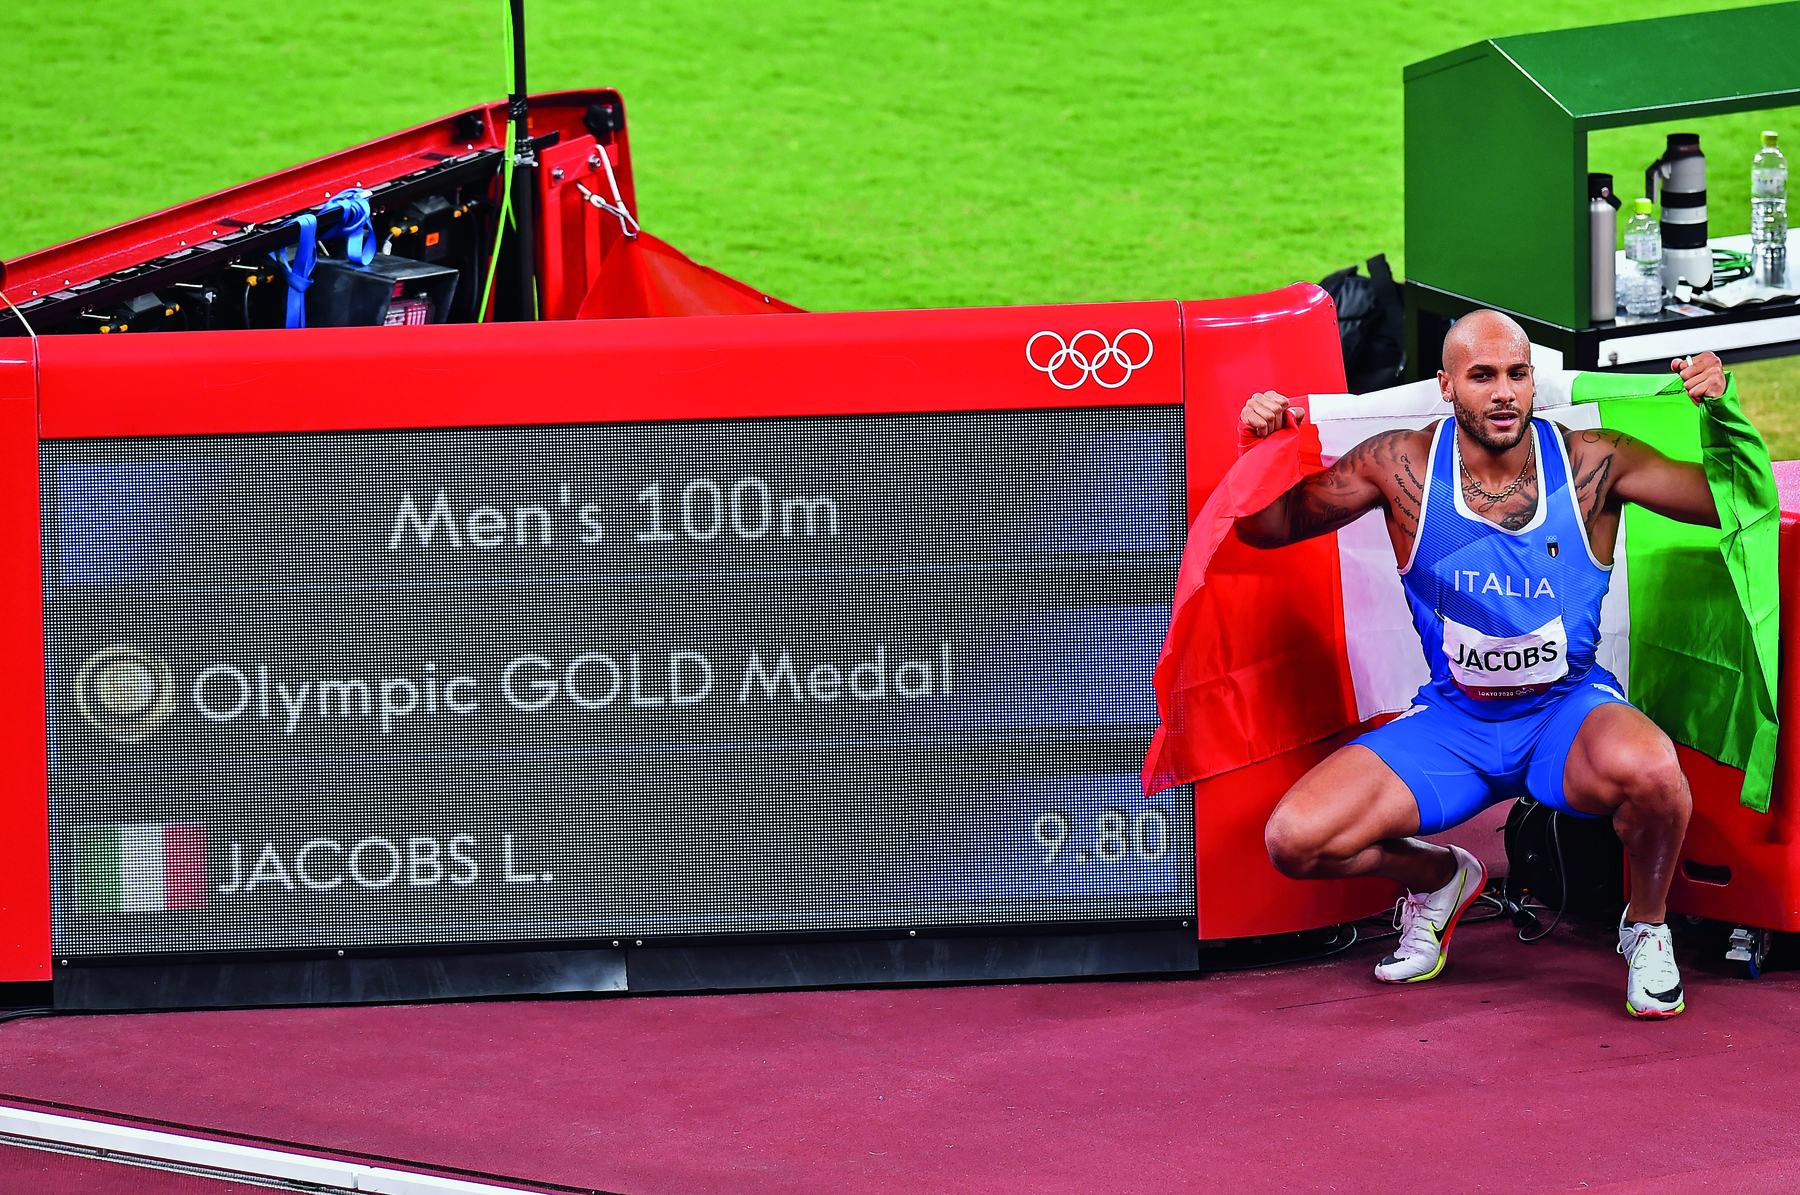 Fotografia. Homem negro de regata azul e bermuda está abaixado com os braços para cima. À esquerda, quadro: Men’s 100 m. Olympic GOLD Medal. Abaixo, bandeira da Itália e o nome JACOBS L.